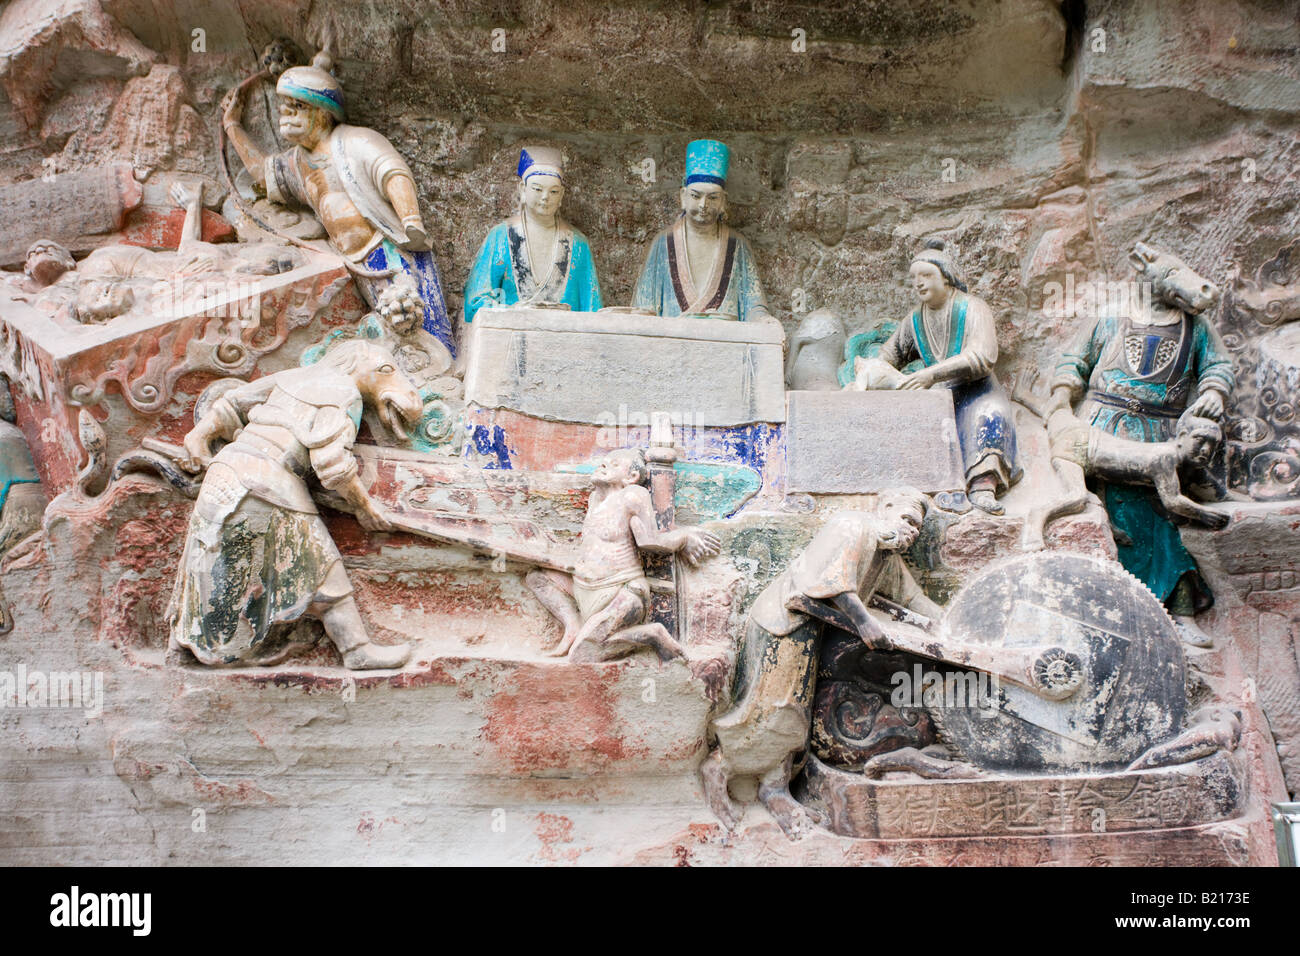 Sculptures rupestres de Dazu scène religieuse au Mont Baoding Chongqing Chine Banque D'Images